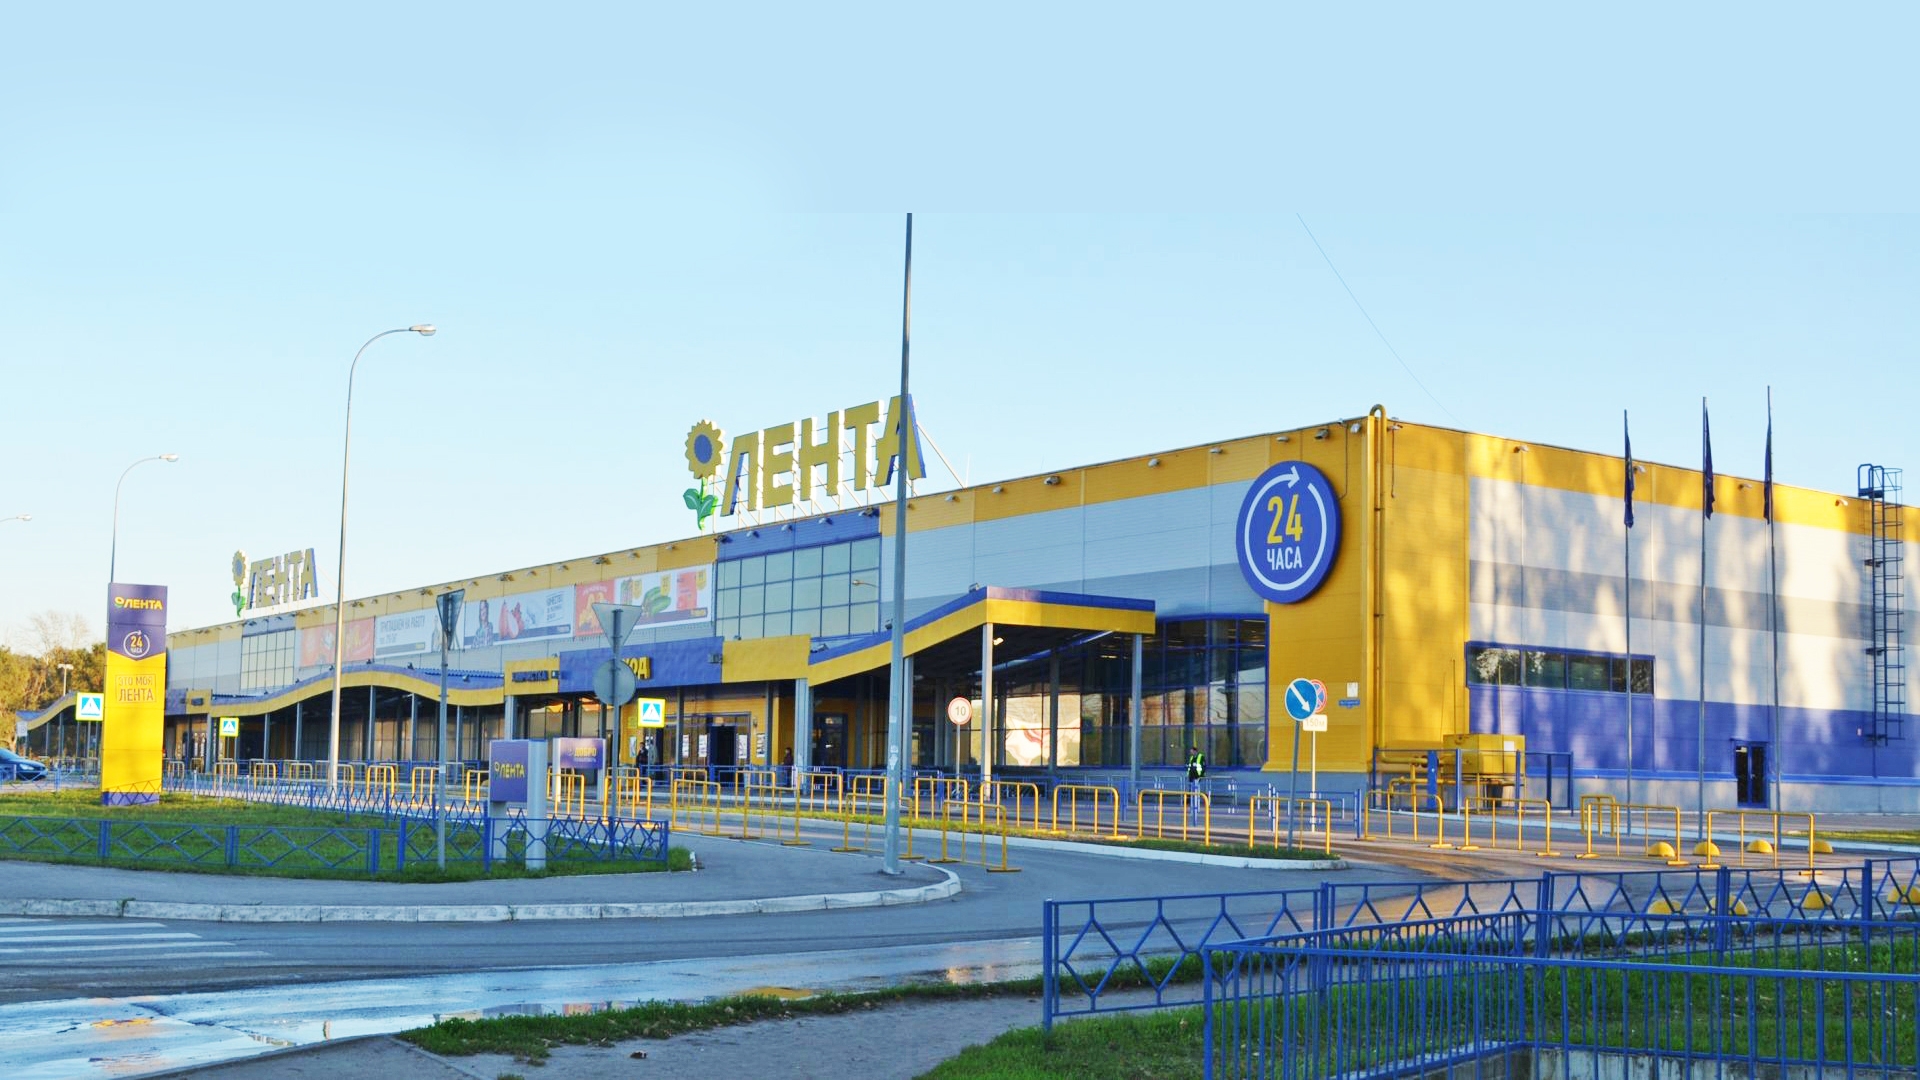 6. Торговый комплекс "Лента" на проспекте Строителей, 2б в г. Пензе. 2009 г.